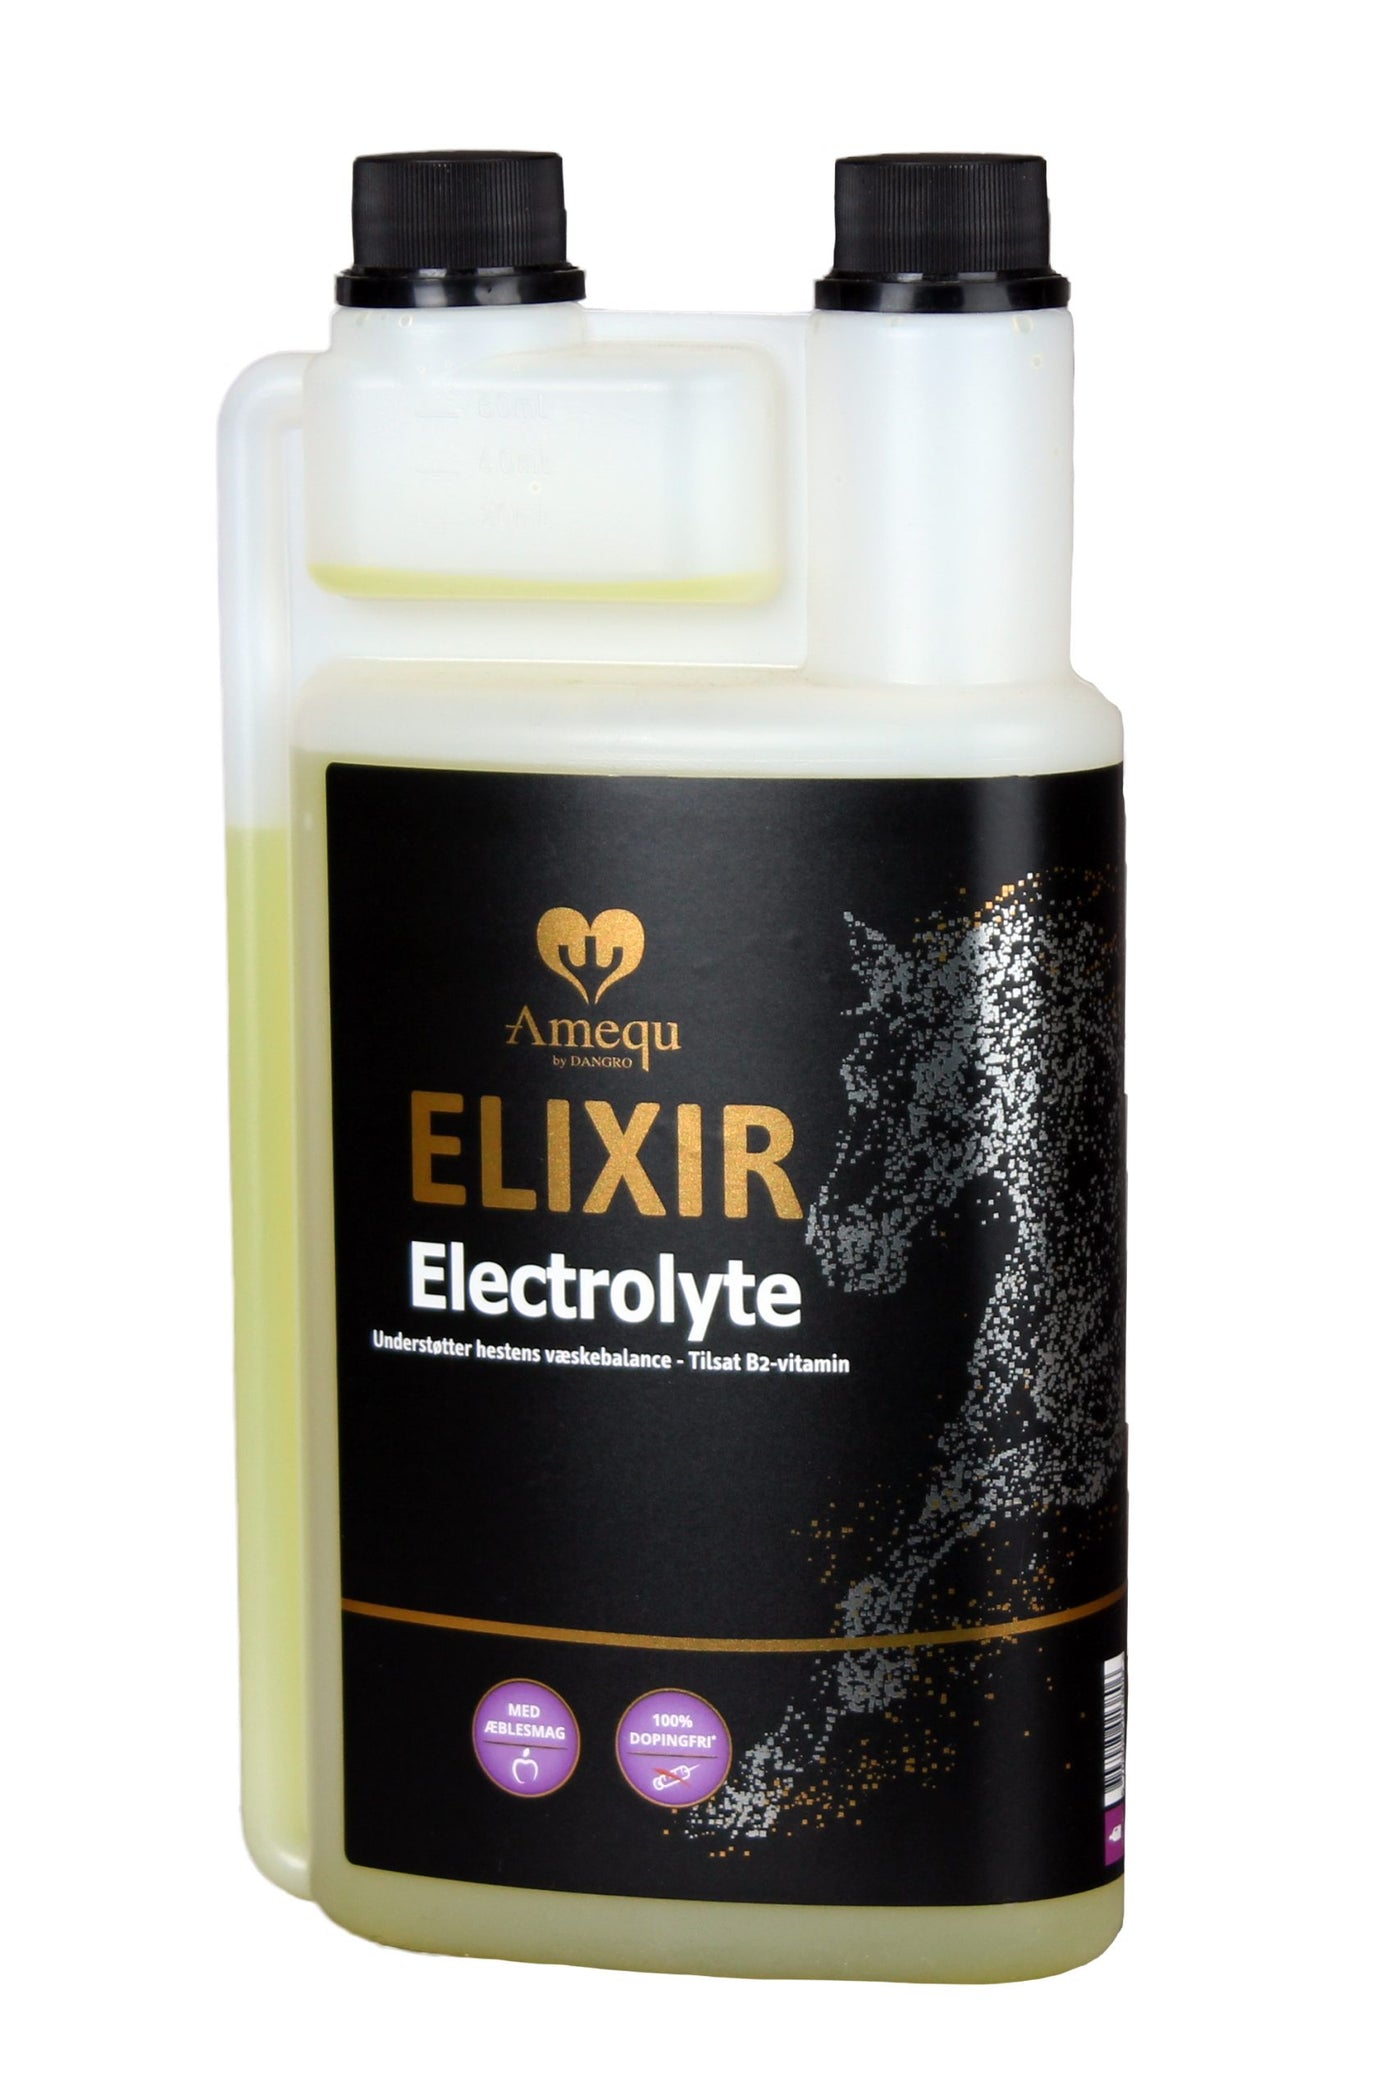 Amequ Elixir Electrolyte